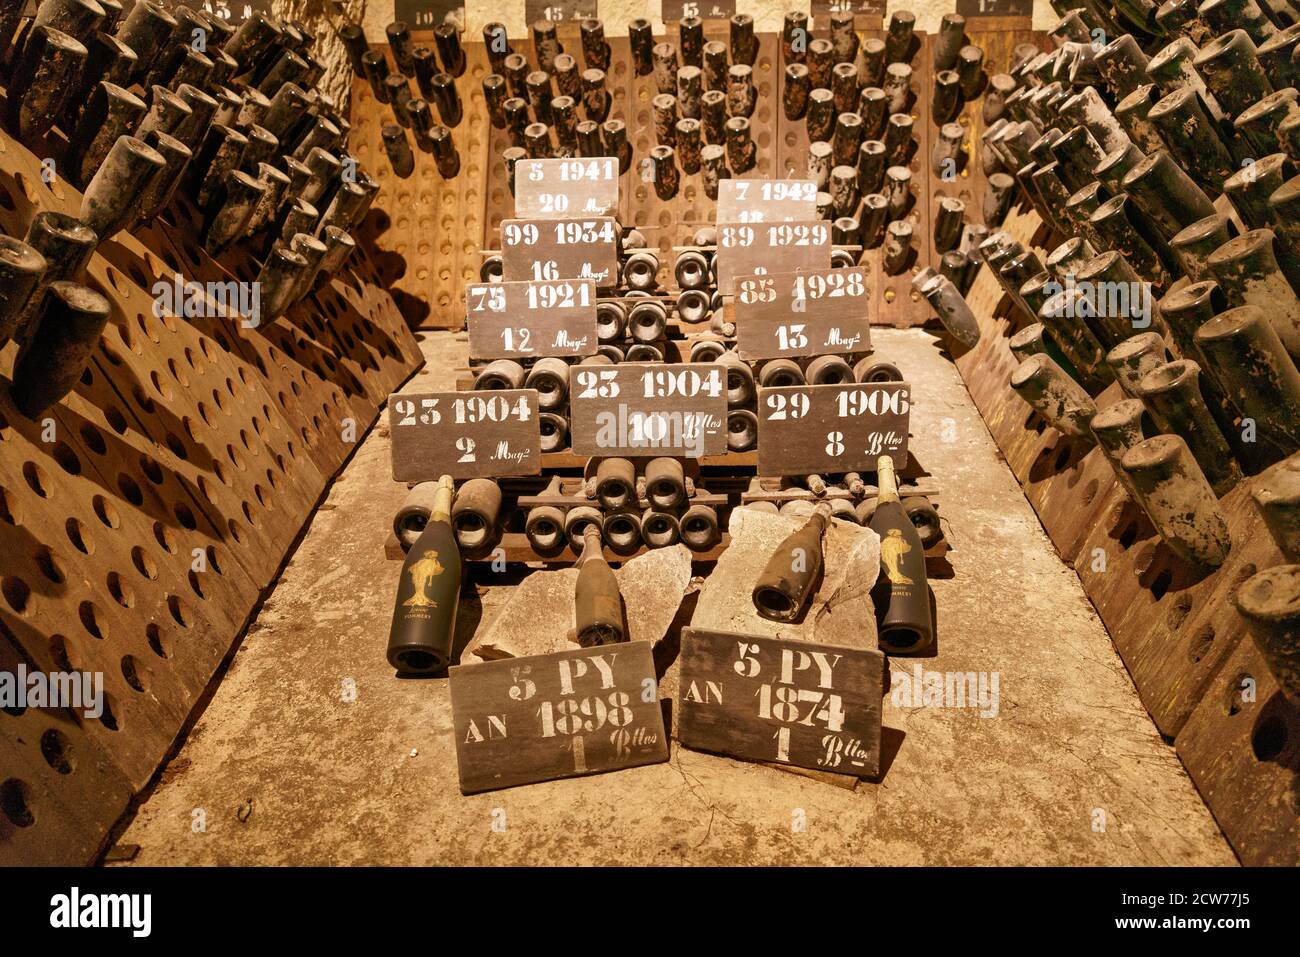 Champagner Keller , Kollektion von uralten Champagner Flaschen ab 1874, Maison de Champagne Vranken-Pommery , Reims, Champagne, Frankreich Stock Photo